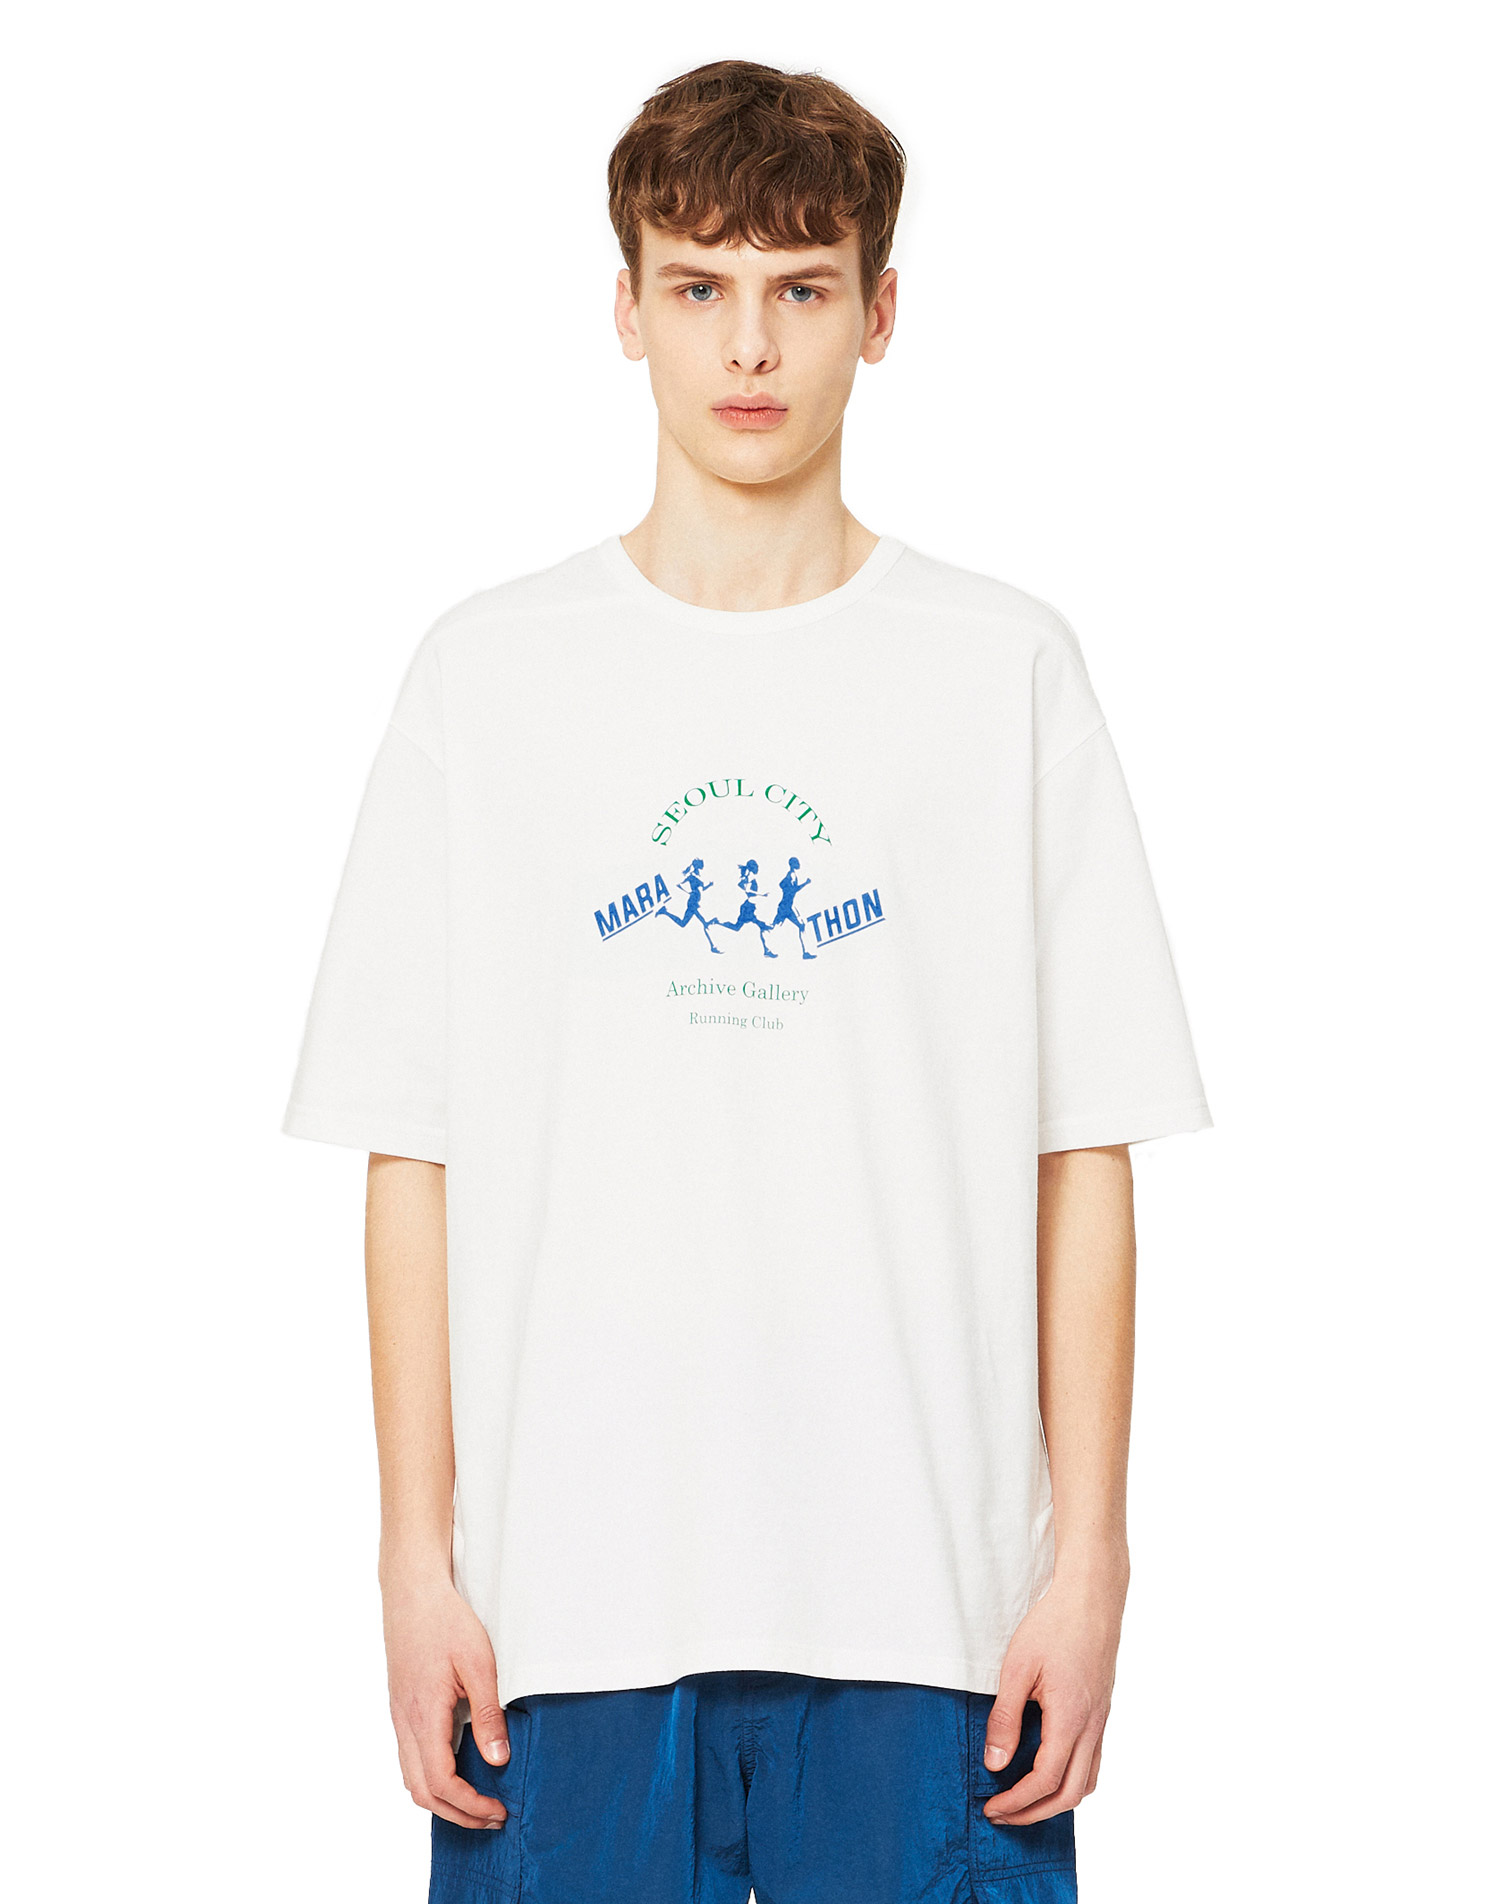 [빈티지 스포츠 무드] 화이트 세미 오버핏 MARA THON 아트웍 반팔 티셔츠 IETS2E701WT